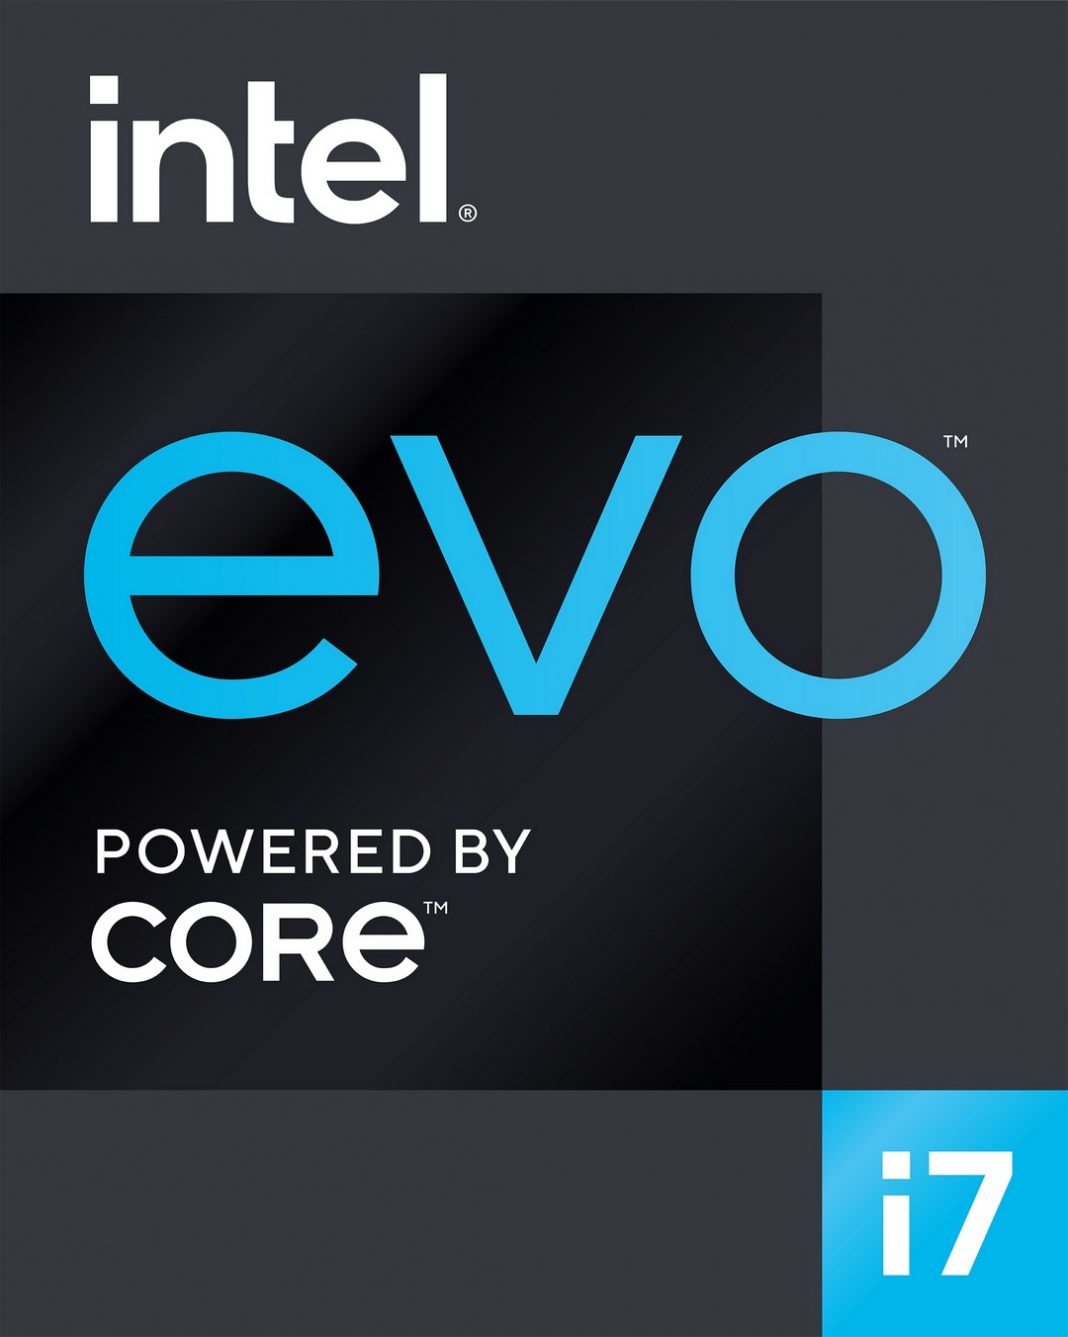 Intel da a conocer la plataforma Intel Evo